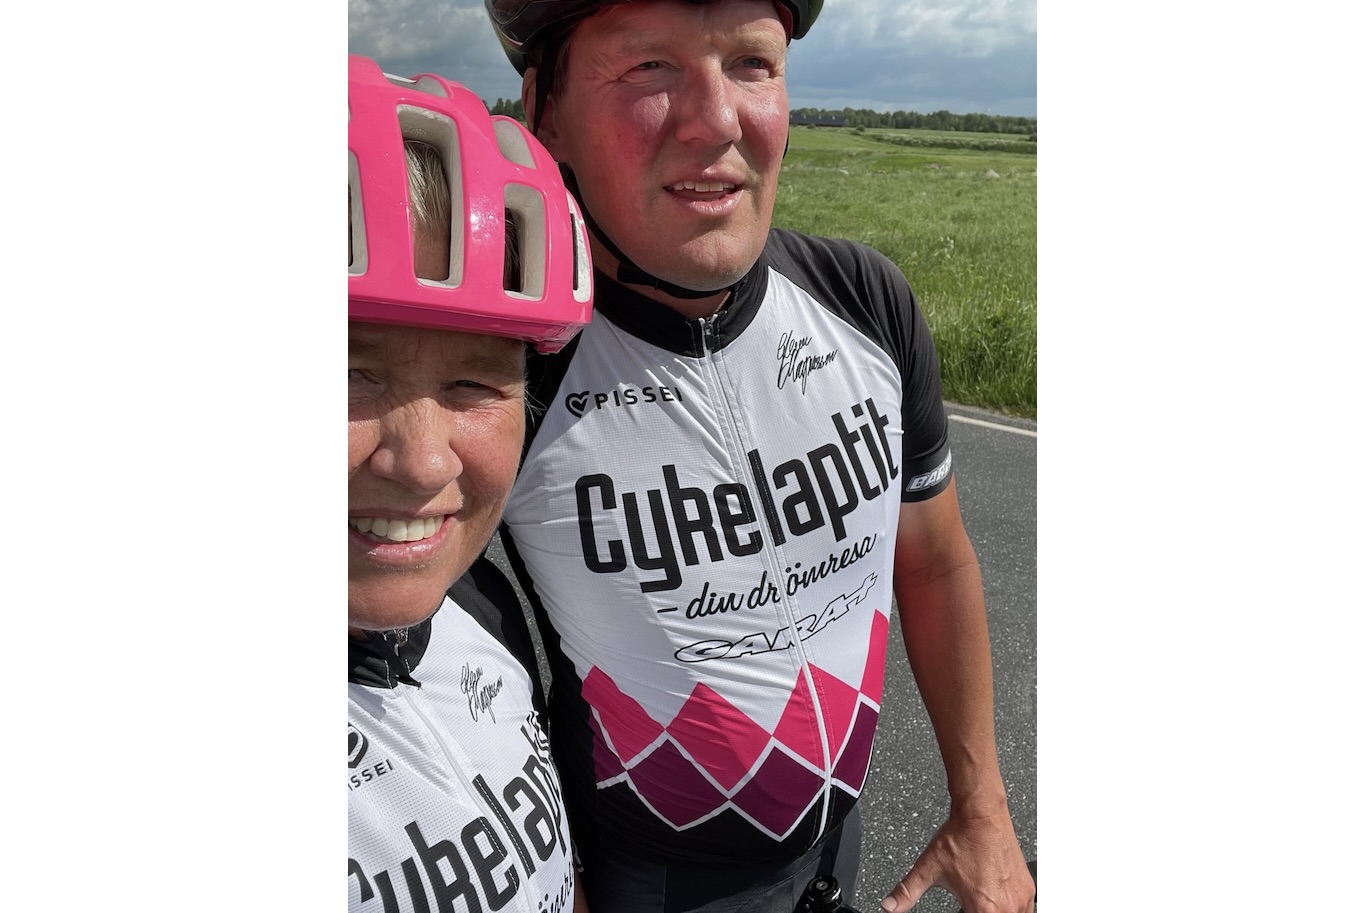 Förre proffsstjärnan Glenn Magnusson, med bland annat etappsegrar i Giro d'Italia på meritlistan, har fortsatt med cykling även efter den aktiva karriären. Tillsammans med frun Lena driver han bland annat Cykelaptit.